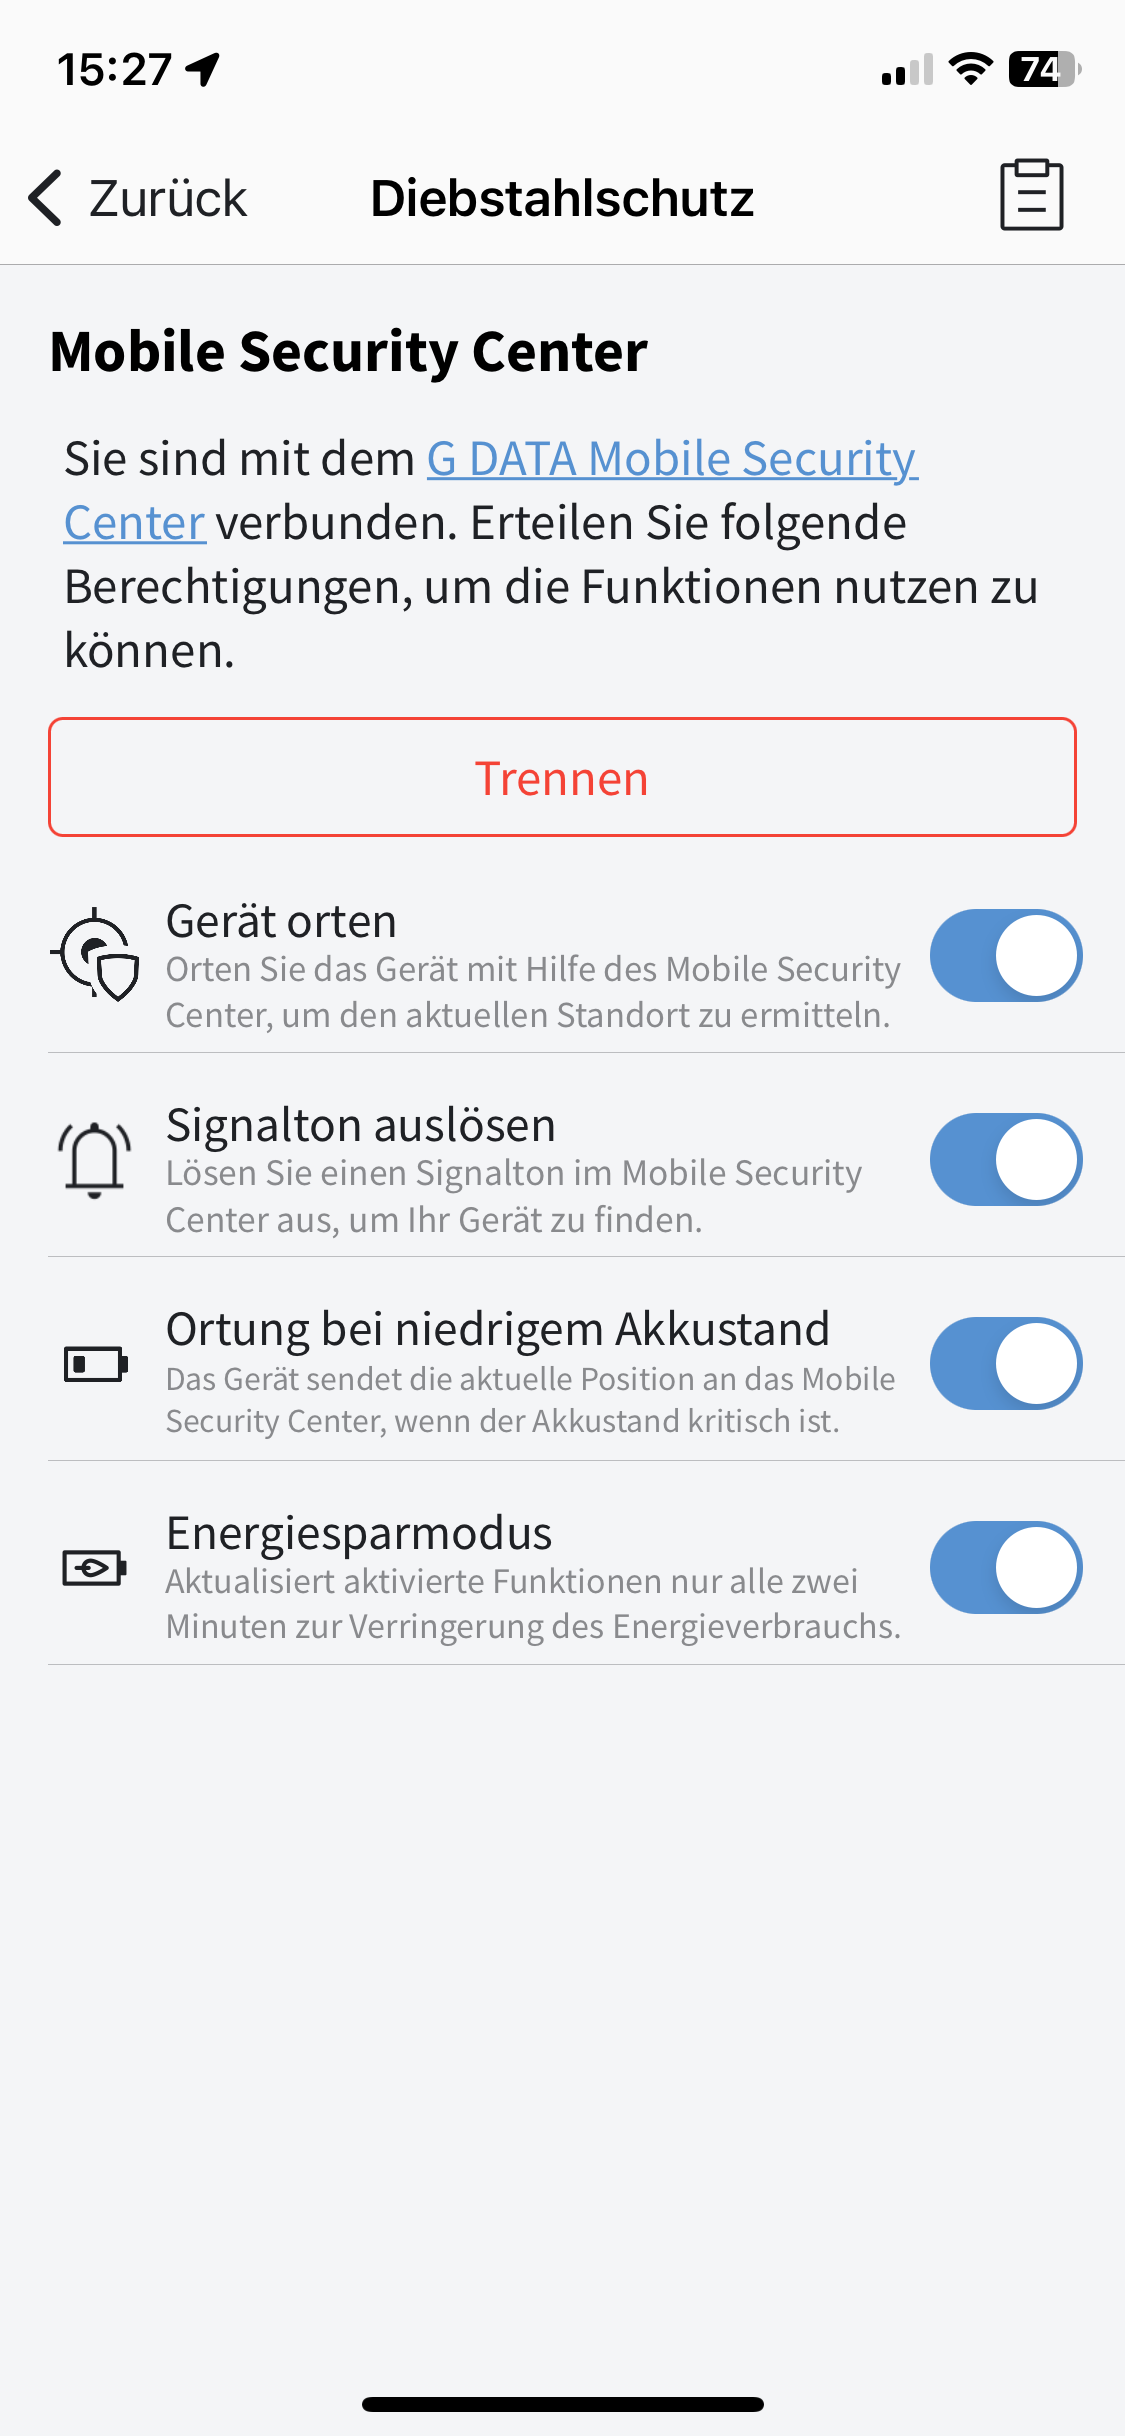 G_DATA_Mobile Security_3.0_Diebstahlschutz_Übersicht